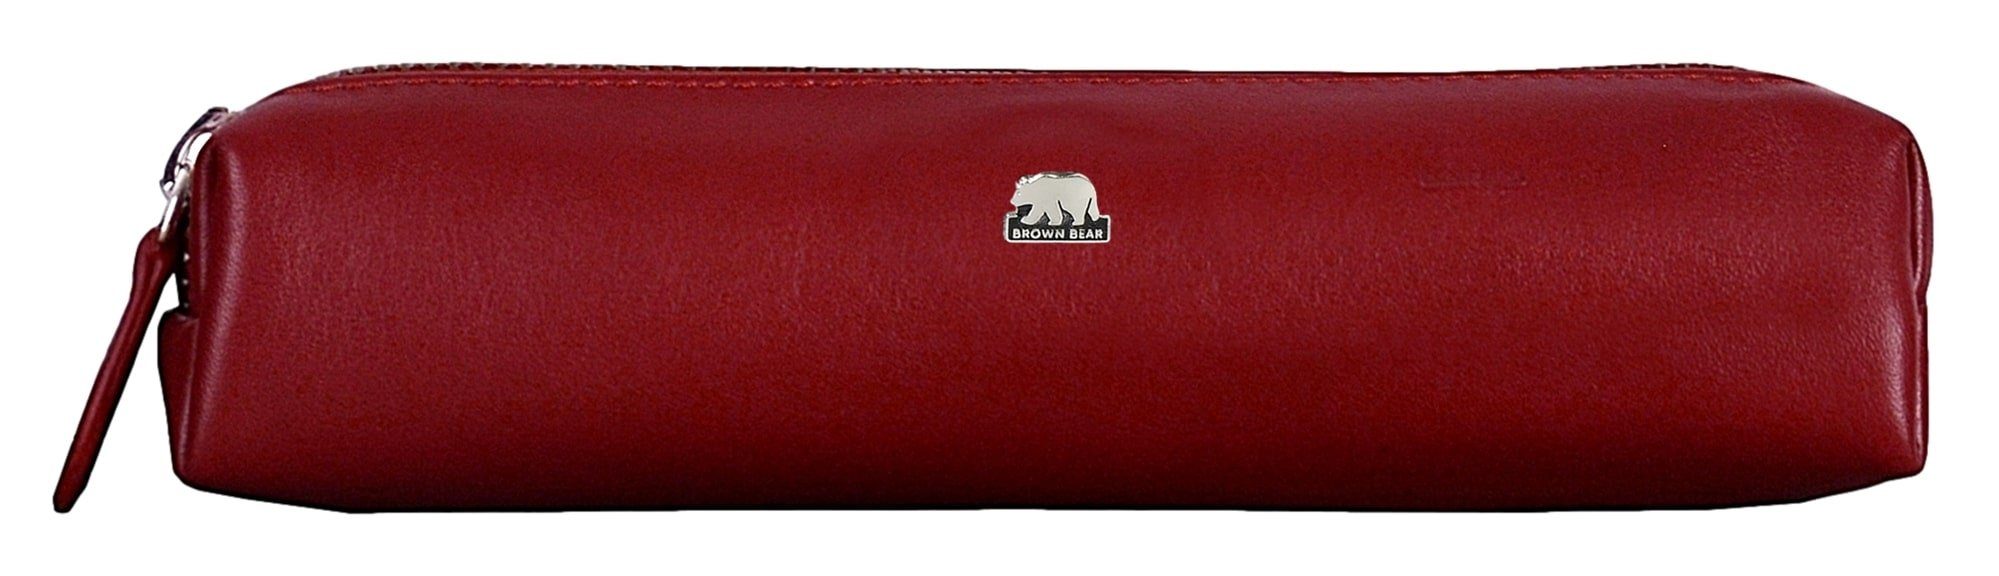 Brown Bear Schreibgeräteetui Modell 3041 - mittleres Schreibgeräteetui mit Reißverschluss, für Damen und Herren aus Echtleder Farbe Rot